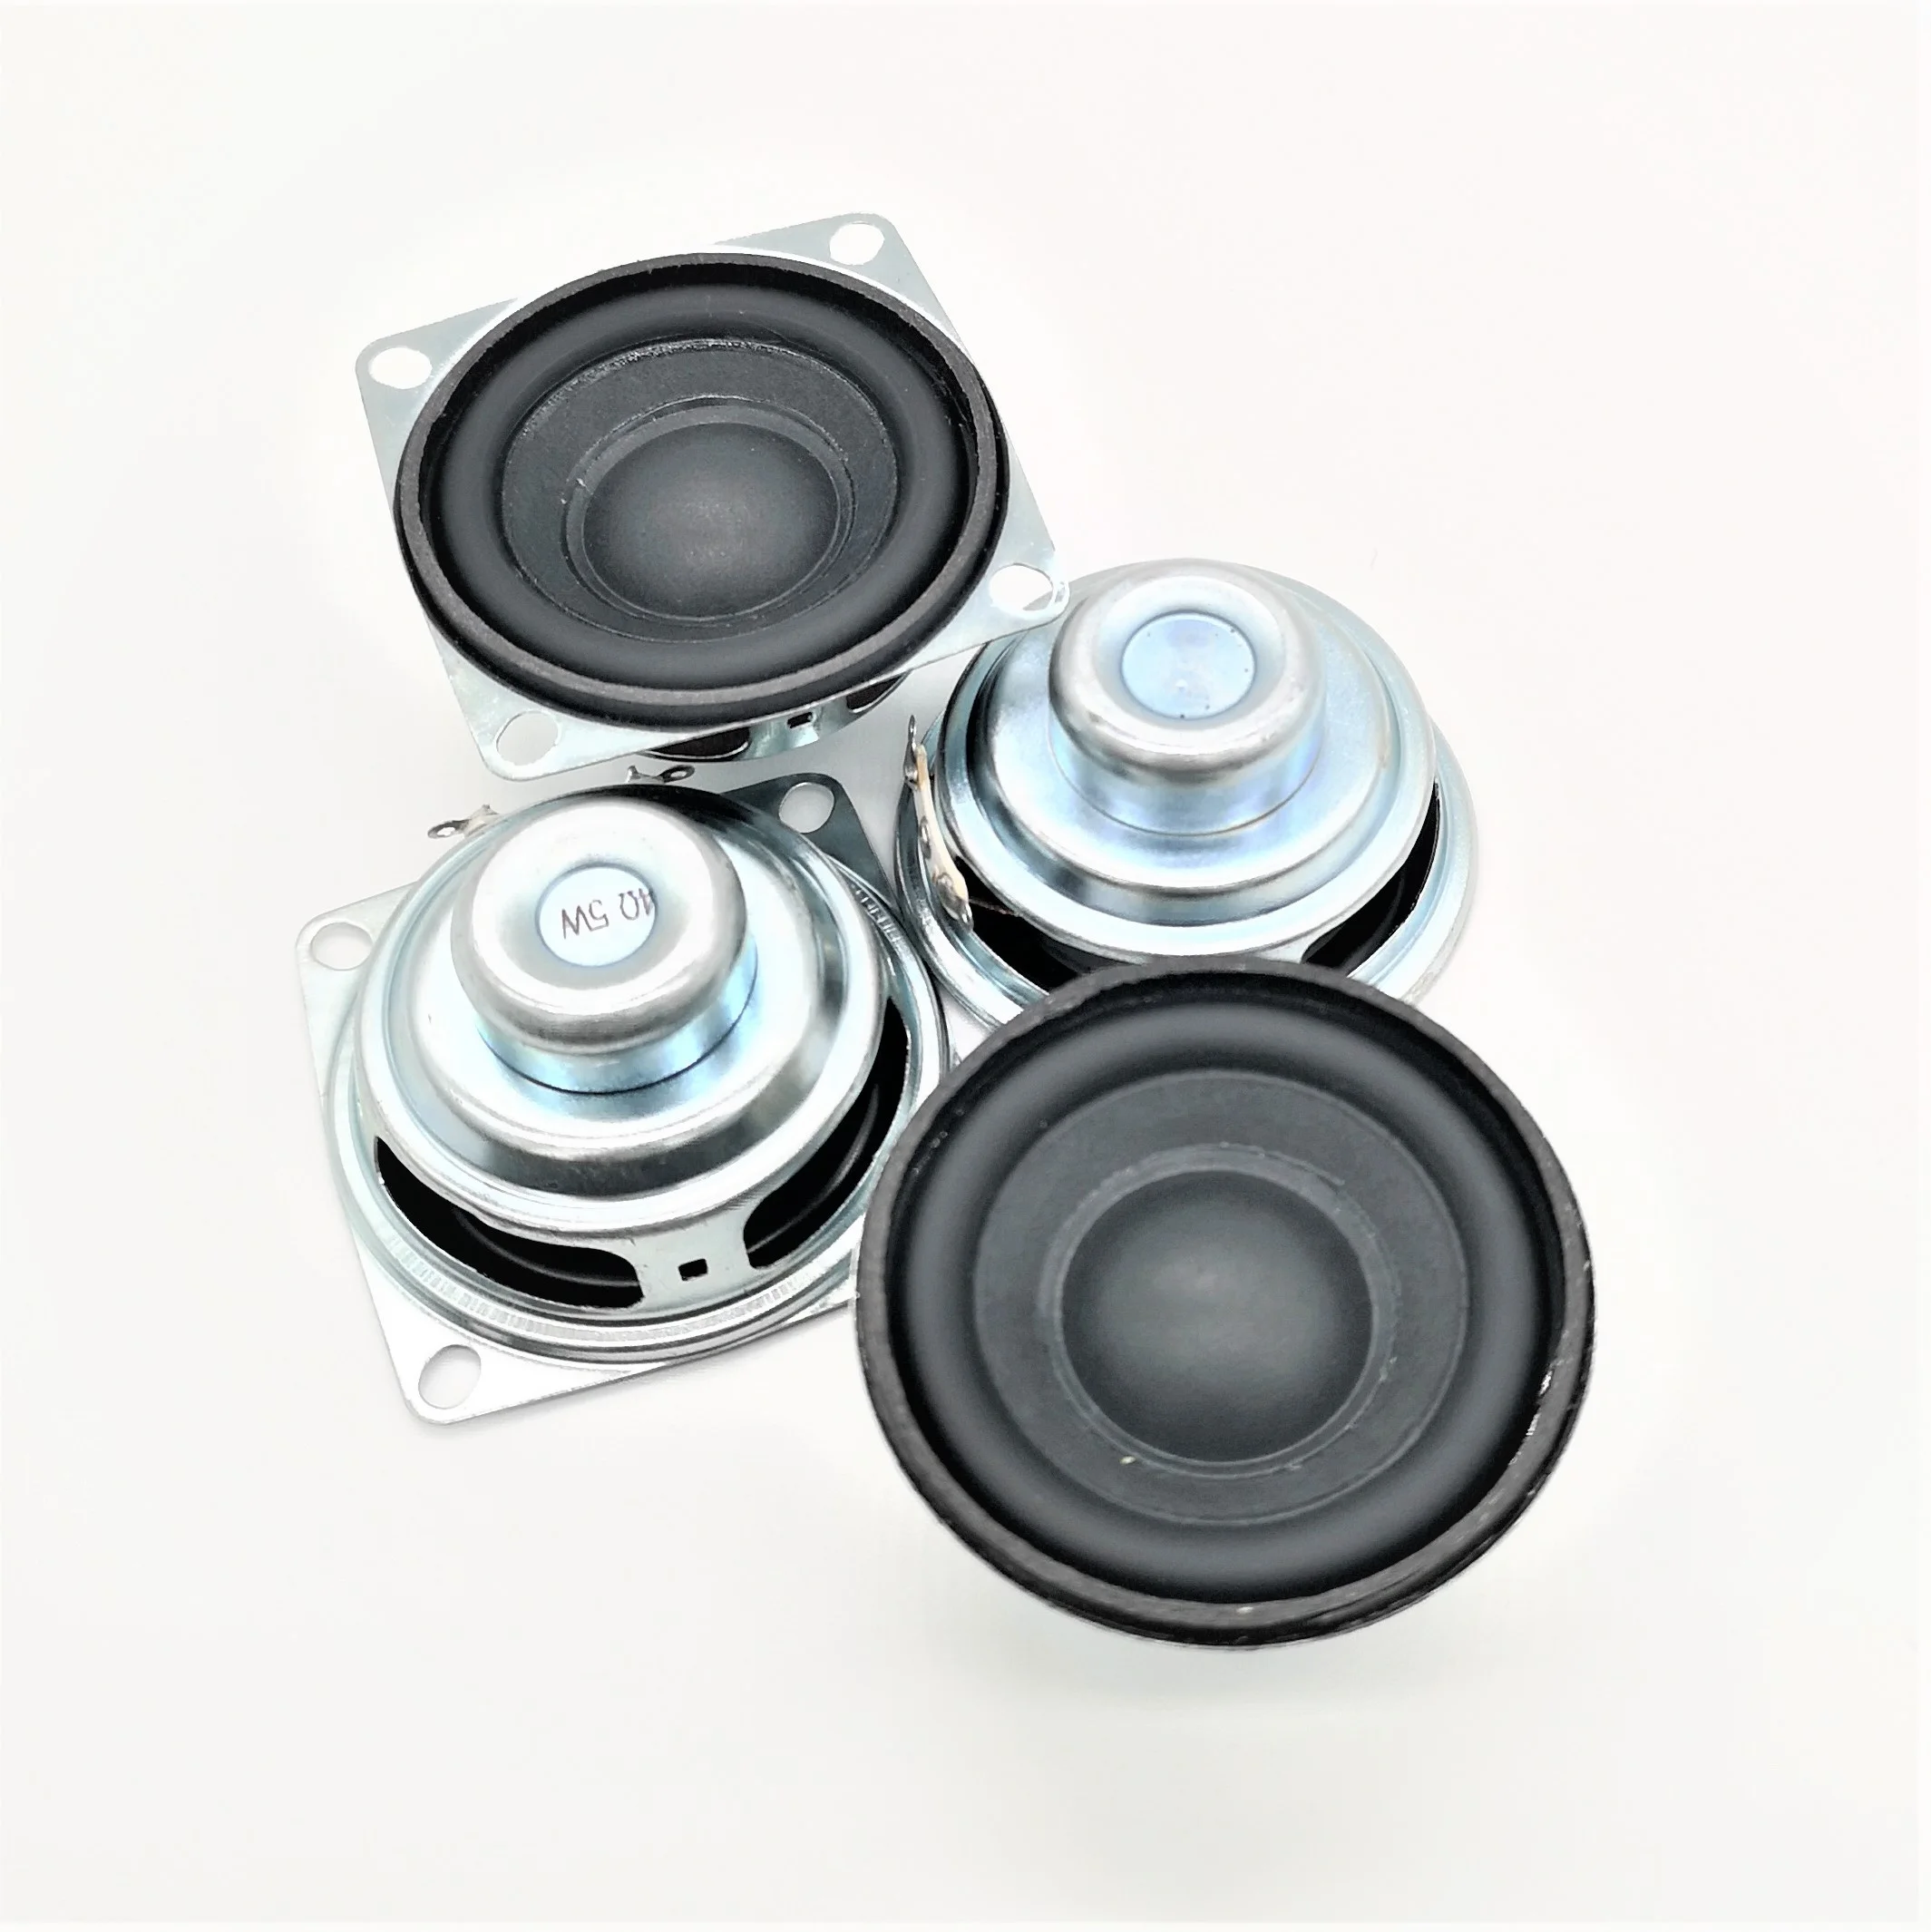 

professional 52mm 4ohm 3w speaker wireless bass horn multimedia speaker